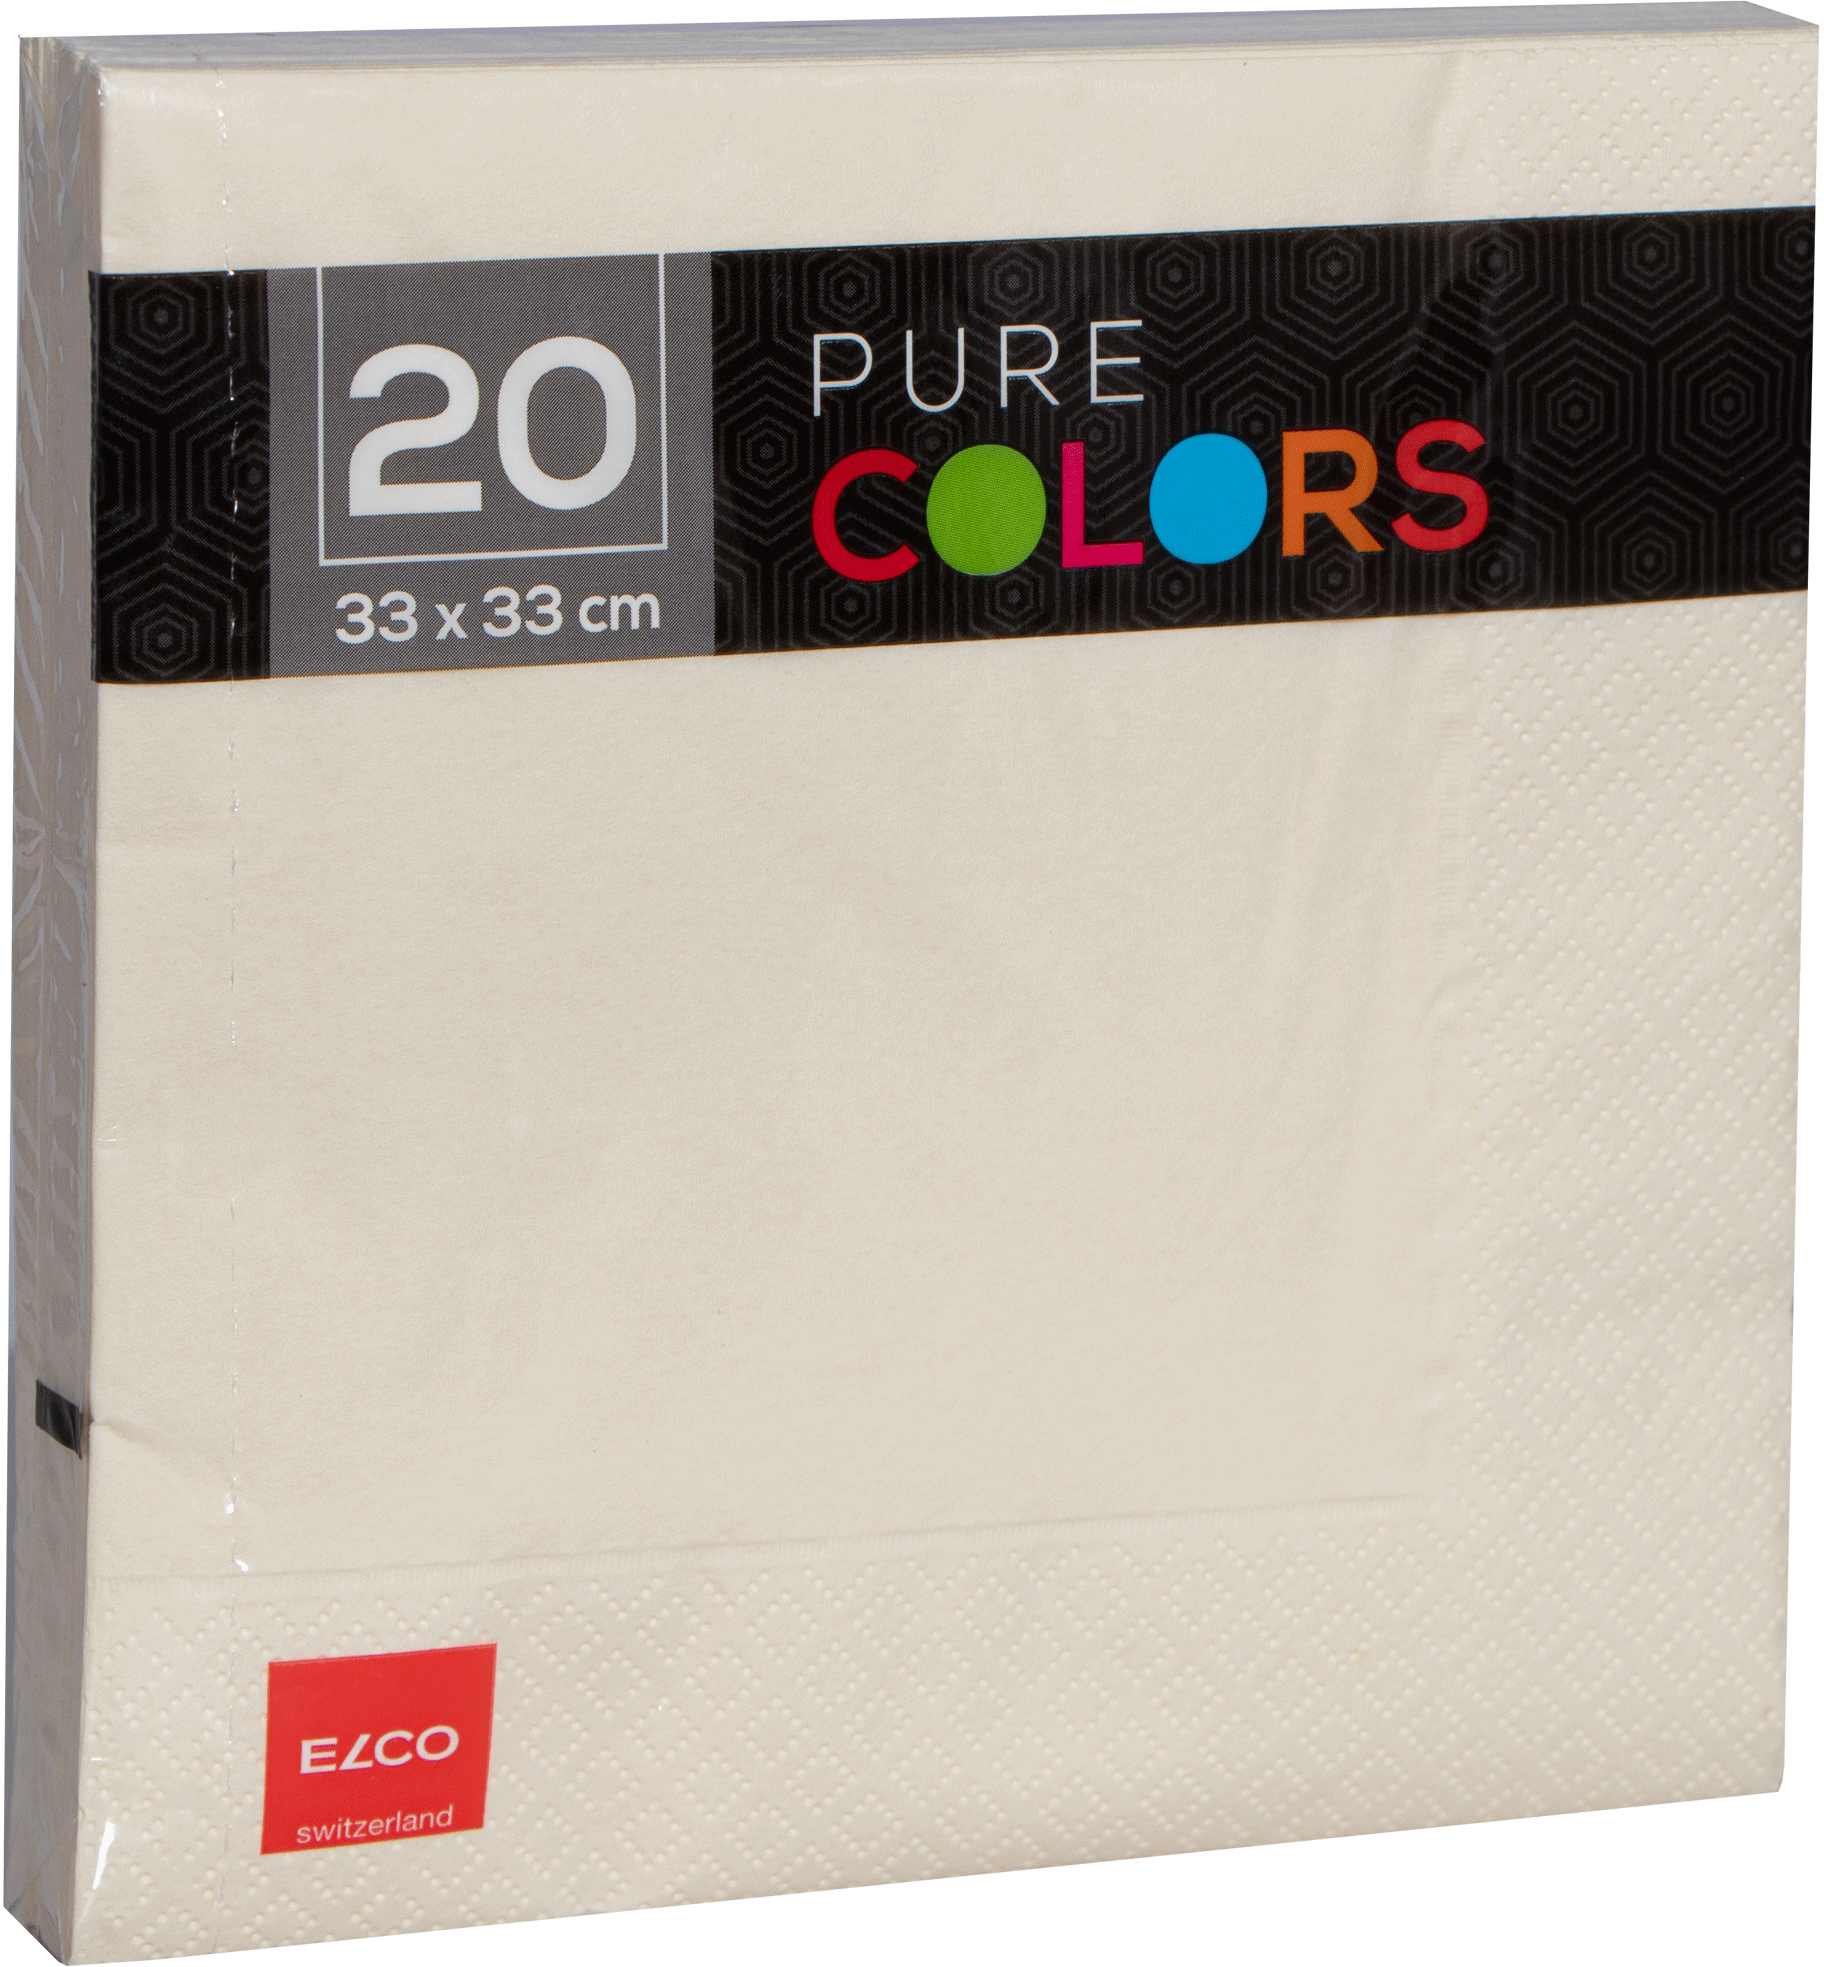 ELCO Serviettes tissue 33x33cm PC334020-004 3 plis, crème 20pcs. 3 plis, crème 20pcs.